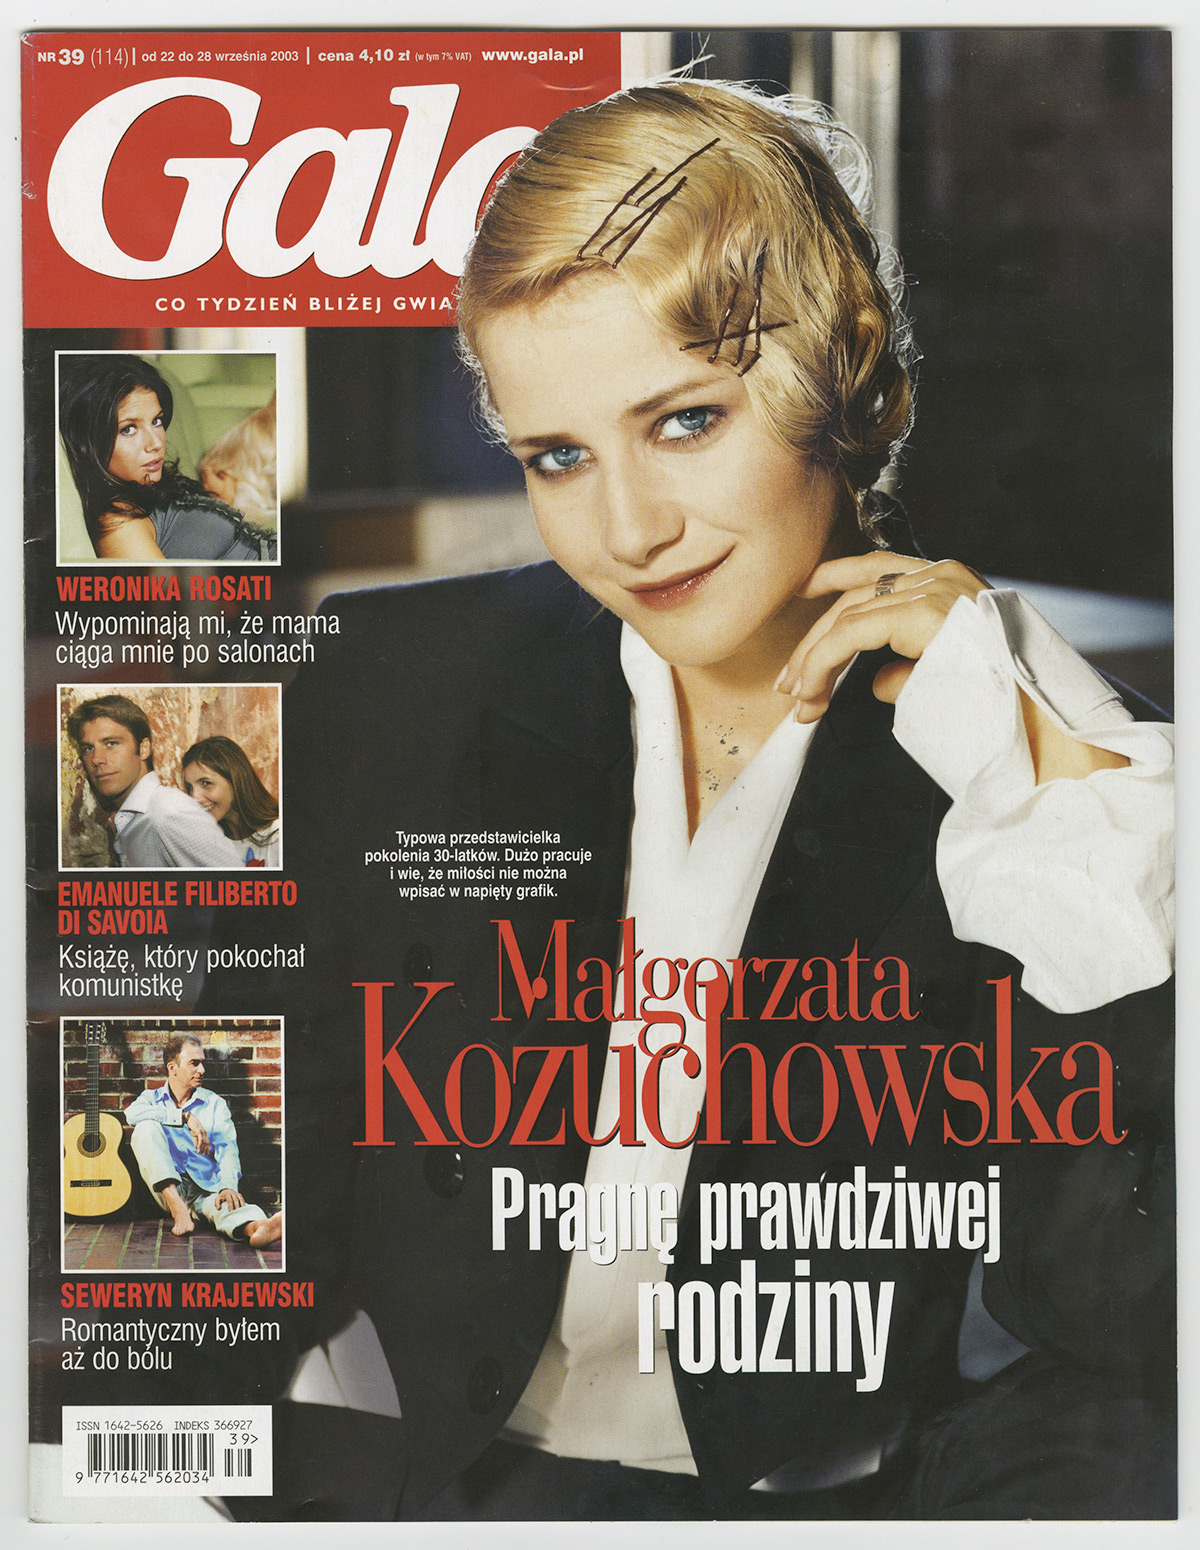 1991-2003-Gala_2003_Romantyczny_bylem_az_do_olu